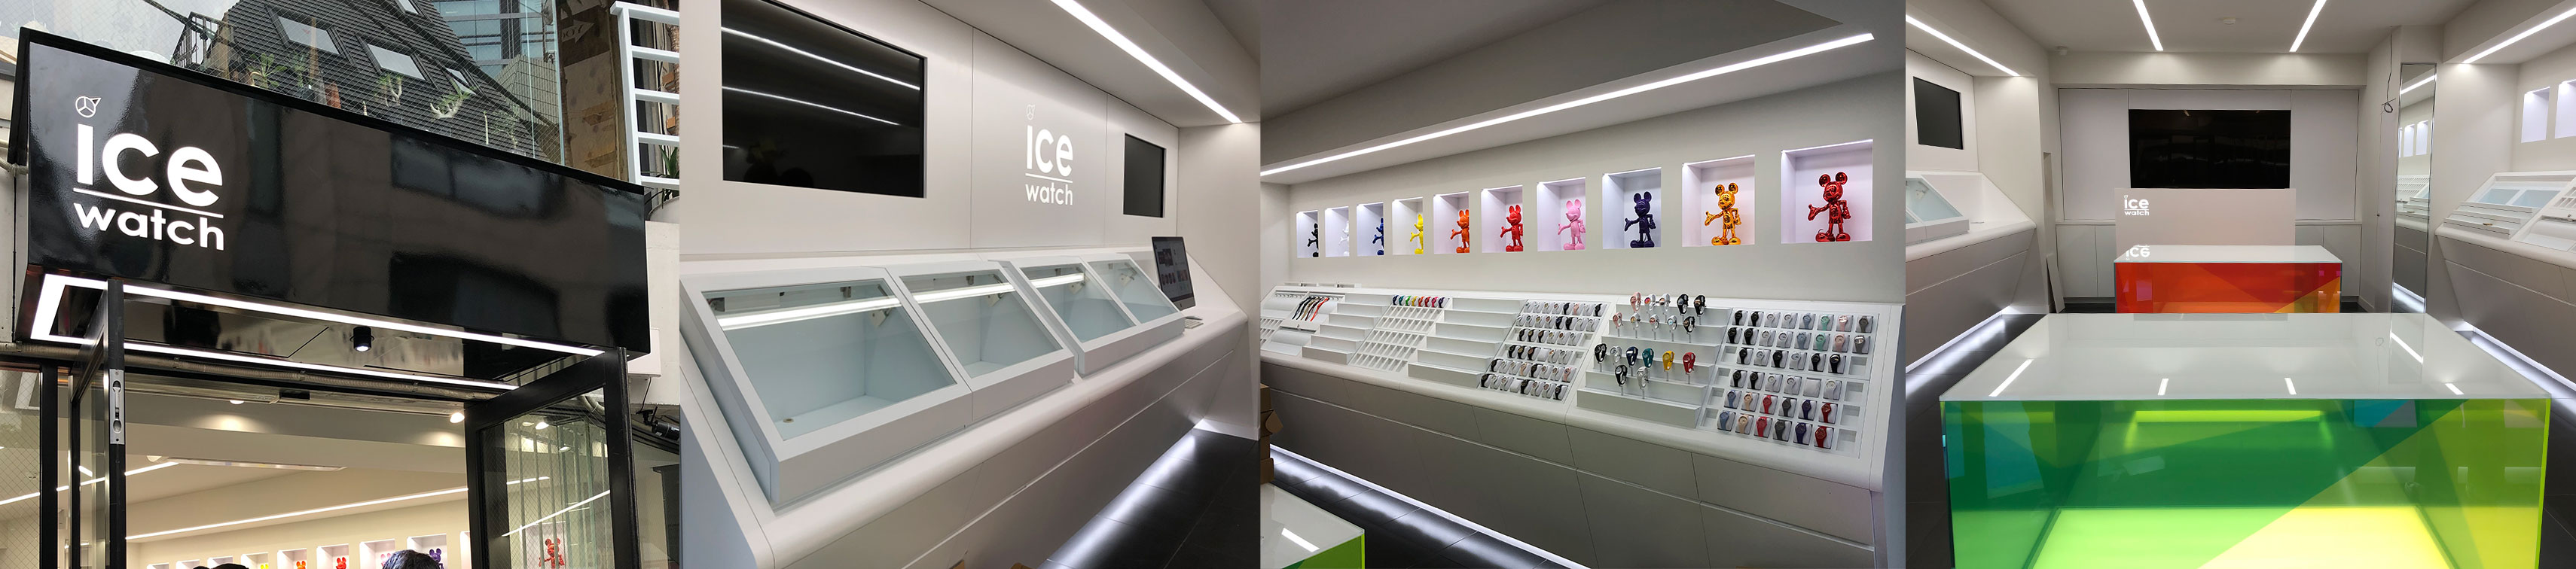 ice watch 原宿店